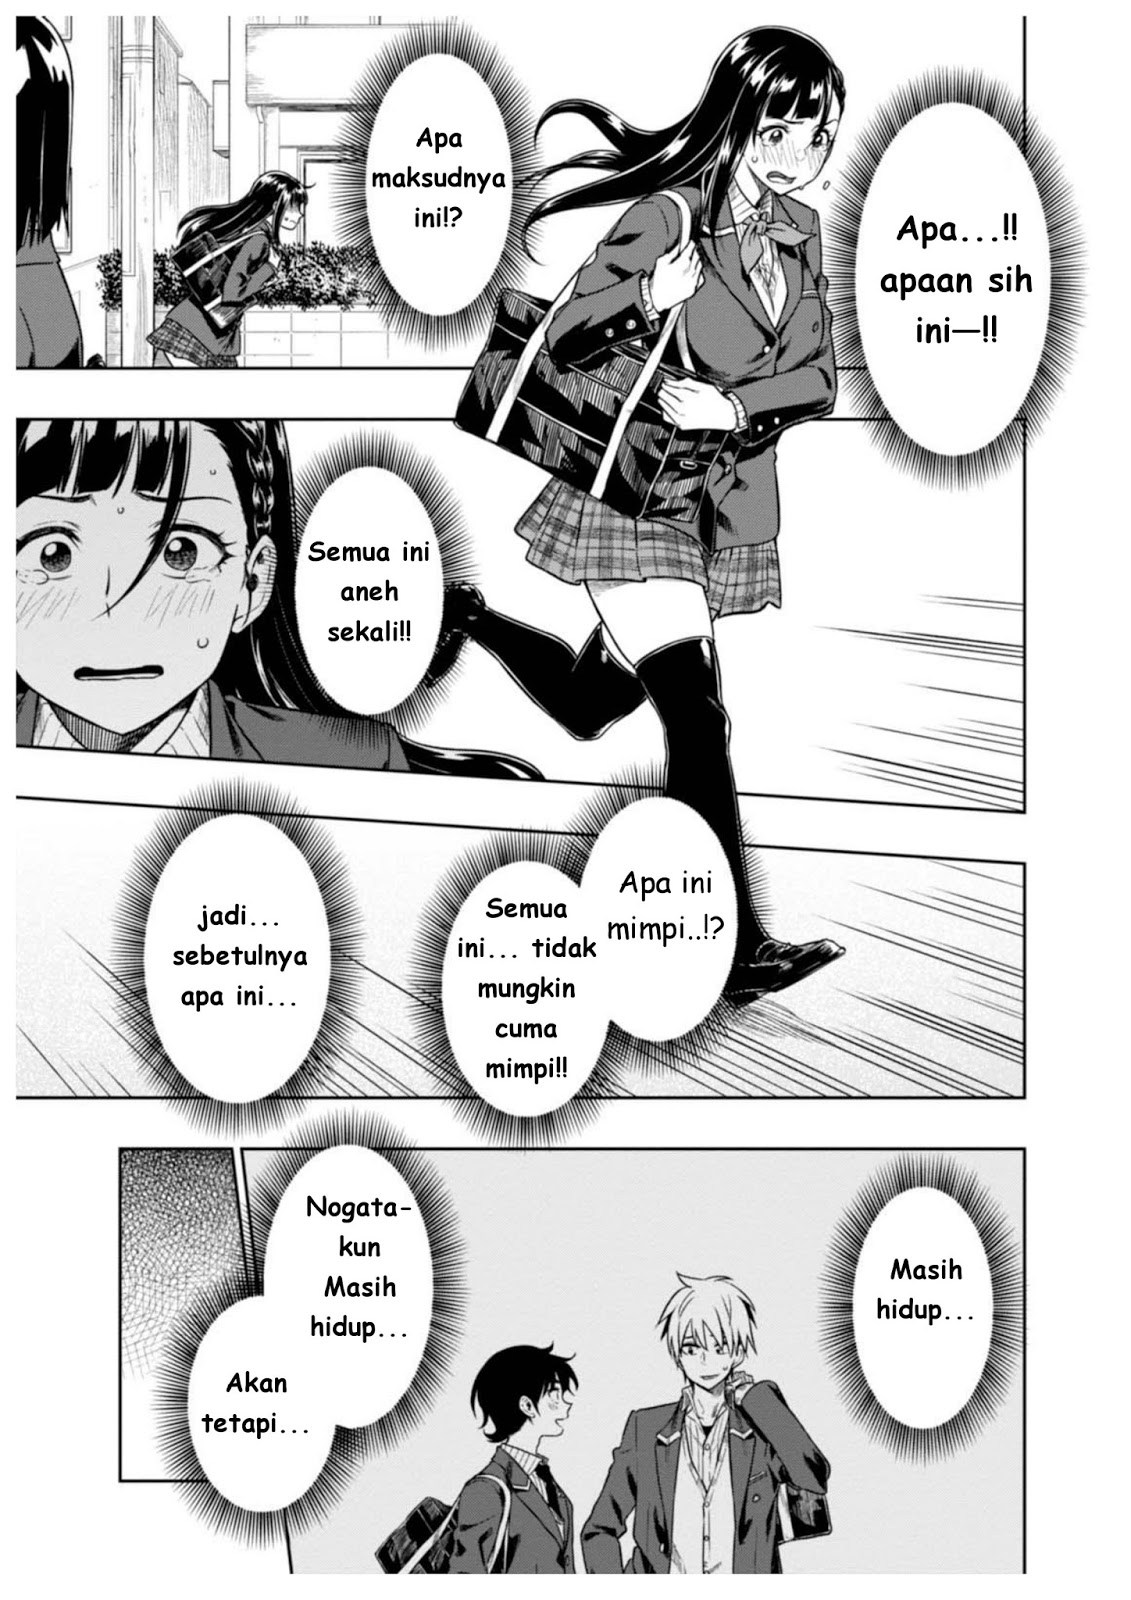 Komik manga dewasa